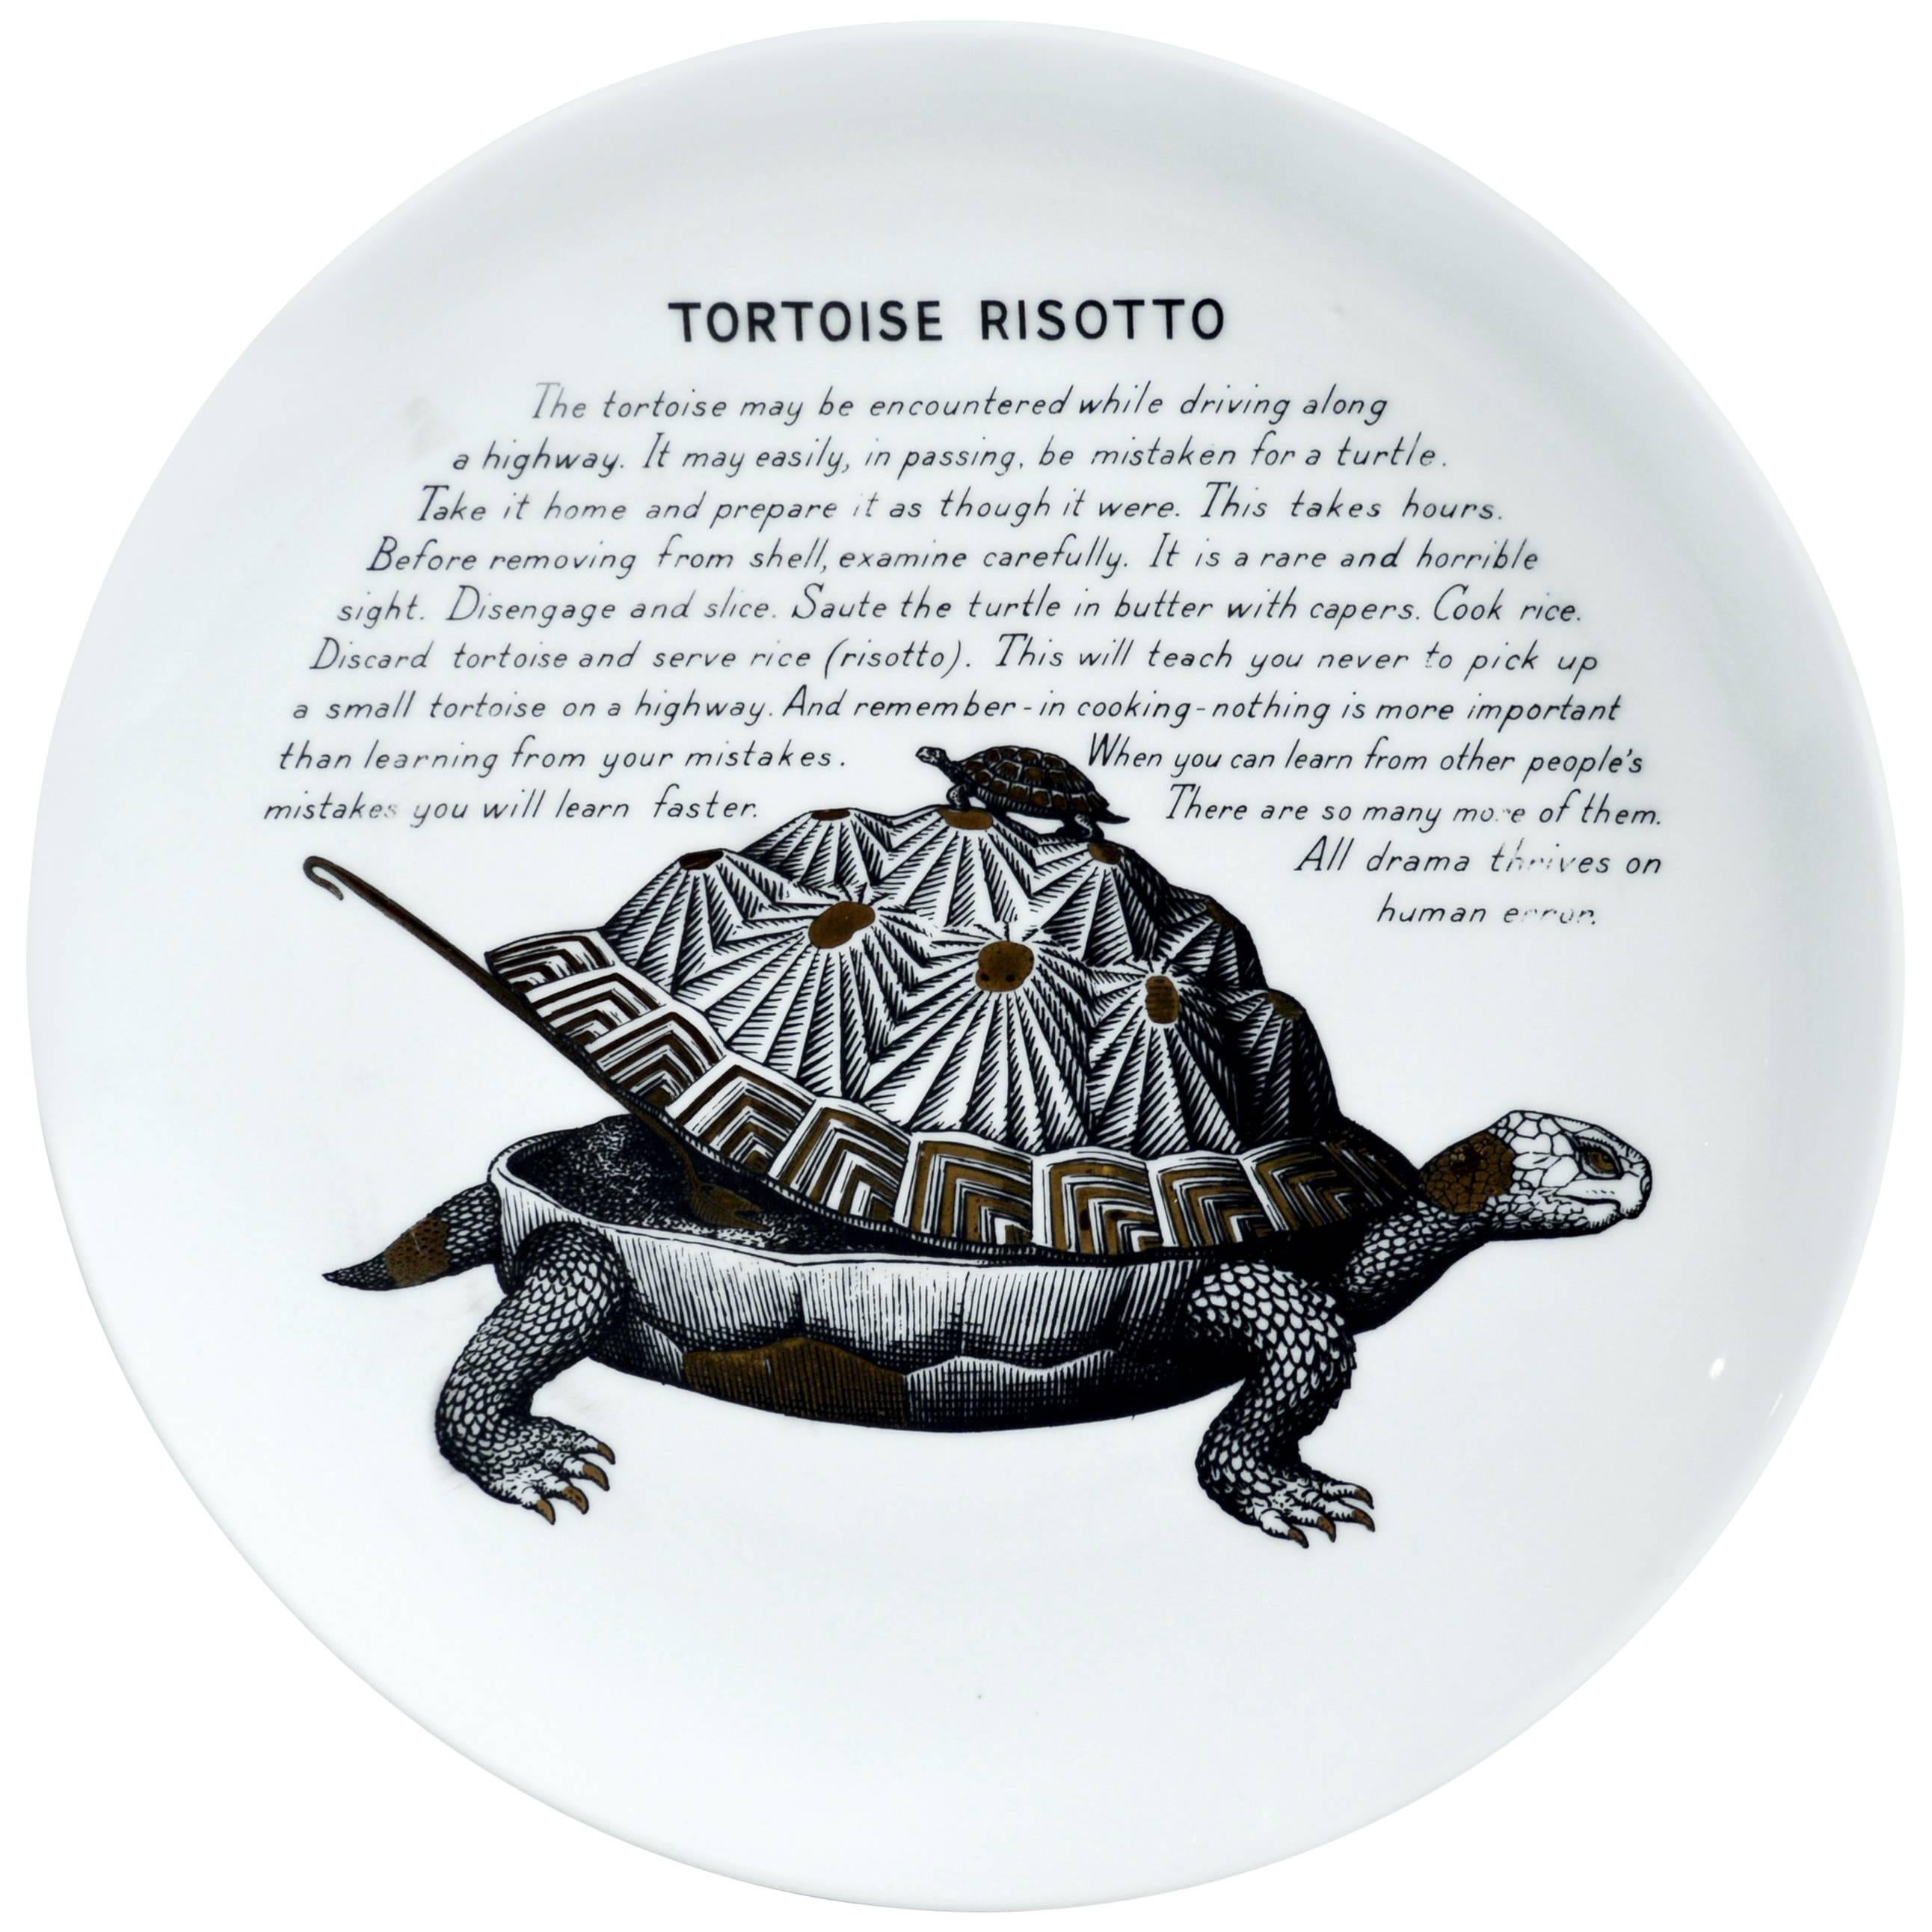 Piero Fornasetti Fleming Joffe Recipe Plate- Tortoise Risotto, 1960s